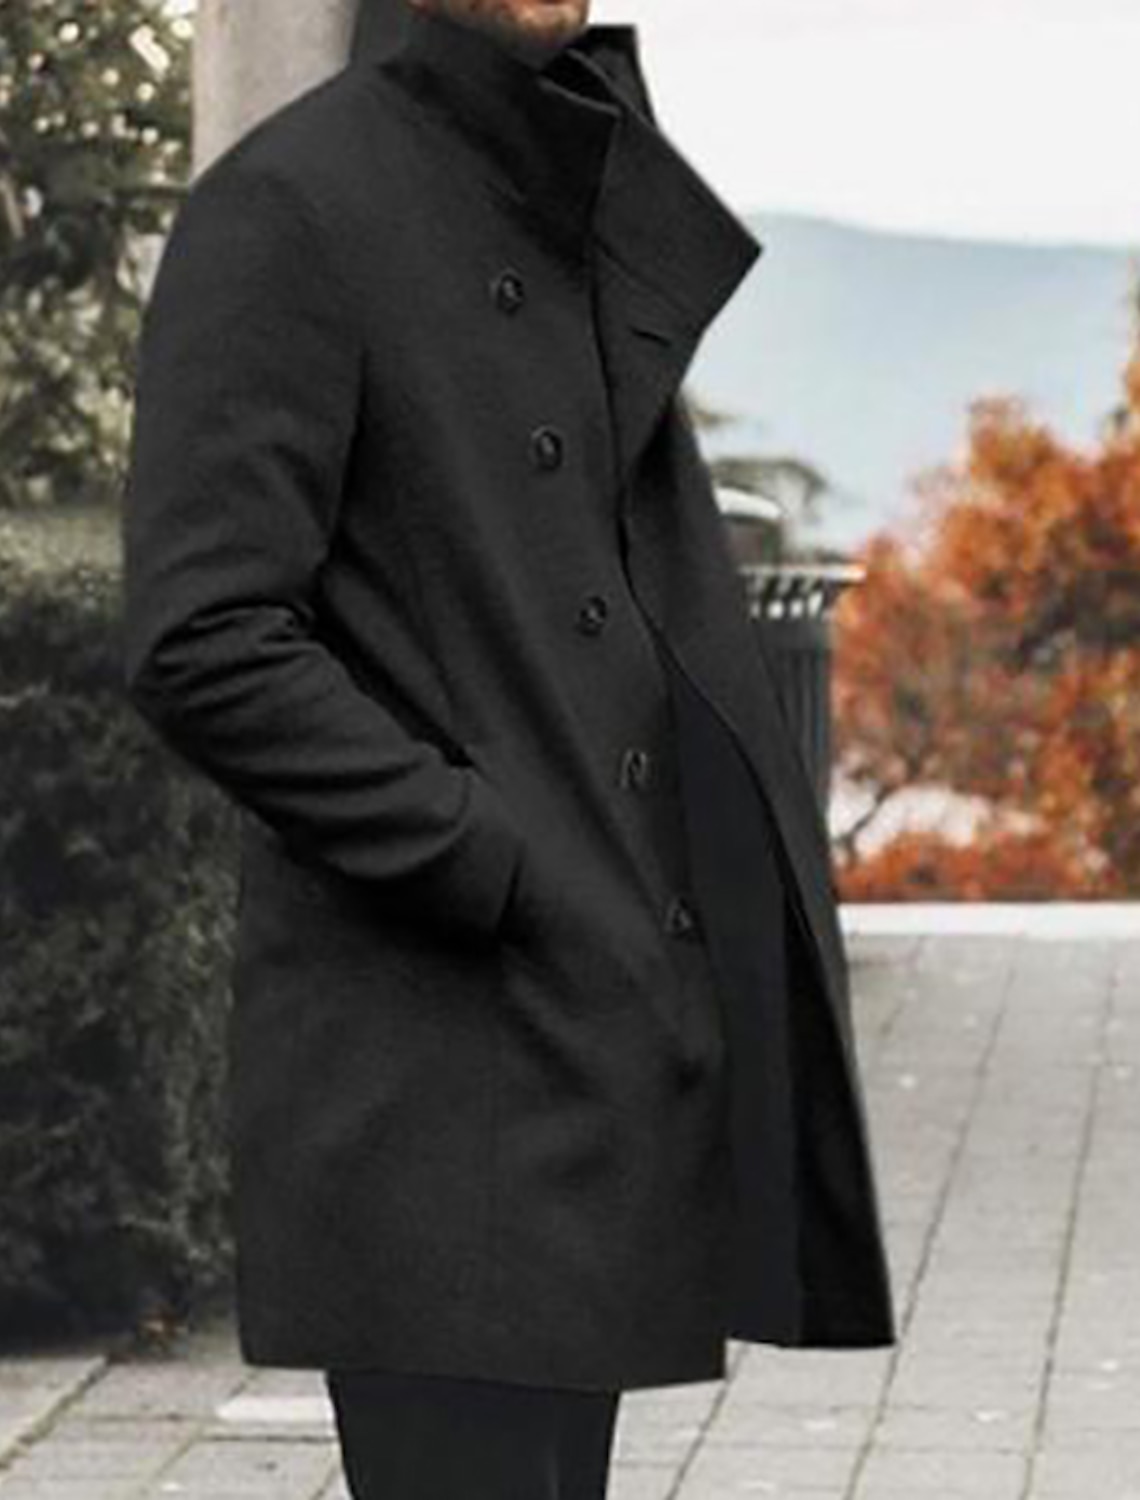 Abrigo de doble pecho ropa de invierno cálida abrigo hecho a mano abrigo largo negro Ropa Ropa para hombre Chaquetas y abrigos abrigo negro abrigo de invierno de hombre abrigo de invierno de mujer 